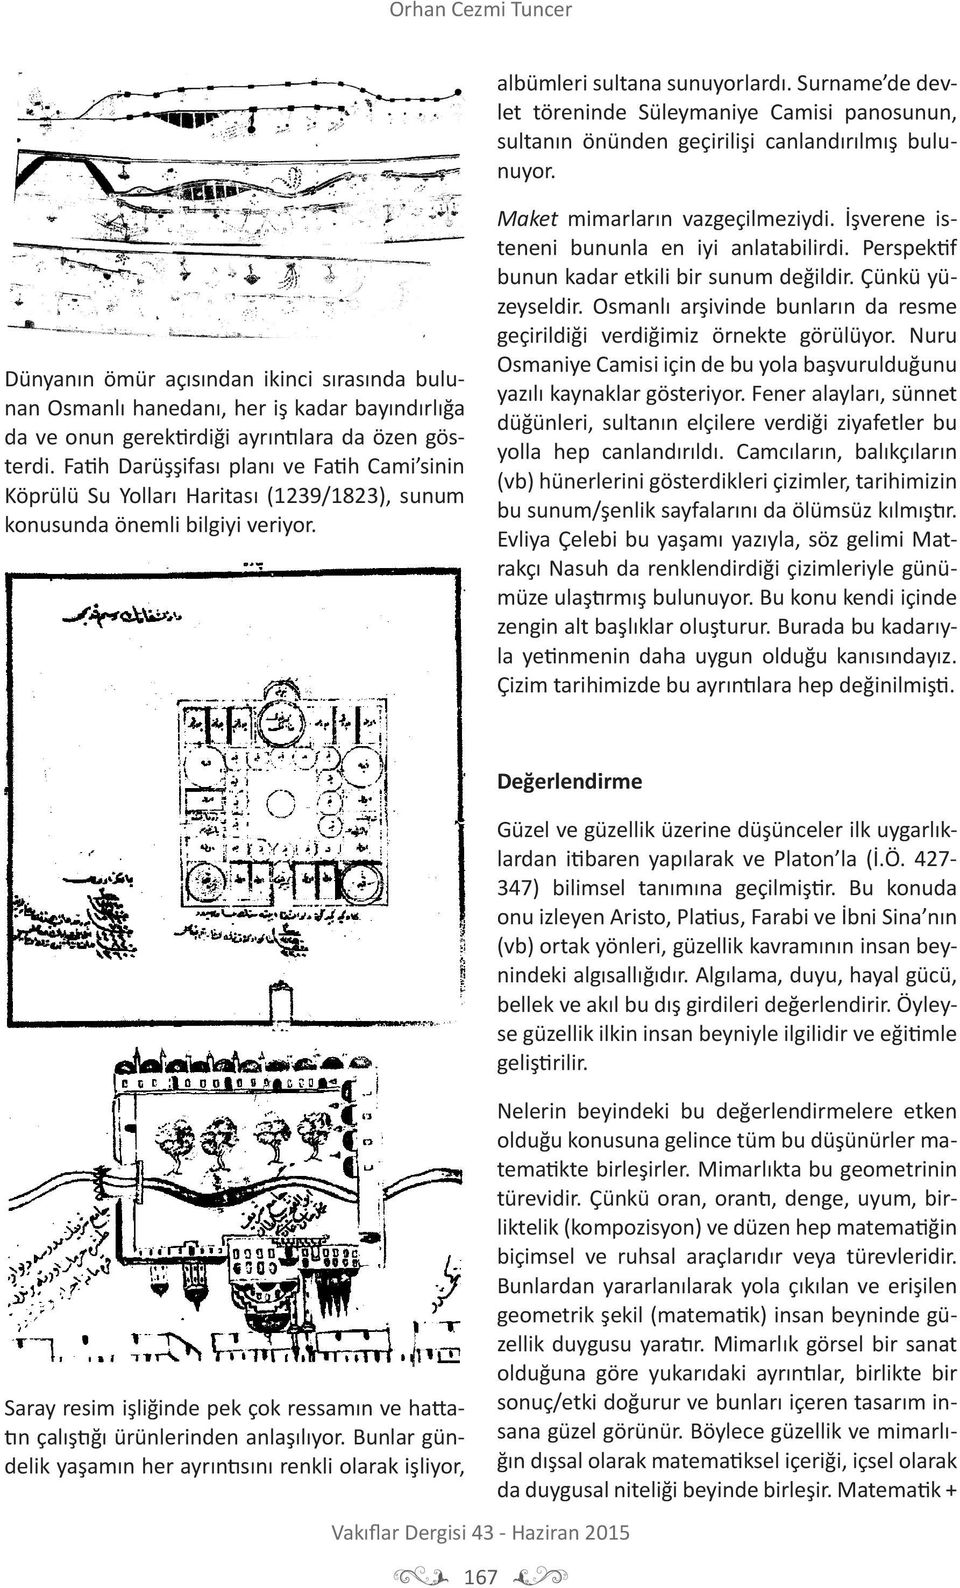 Fatih Darüşşifası planı ve Fatih Cami sinin Köprülü Su Yolları Haritası (1239/1823), sunum konusunda önemli bilgiyi veriyor. Maket mimarların vazgeçilmeziydi.